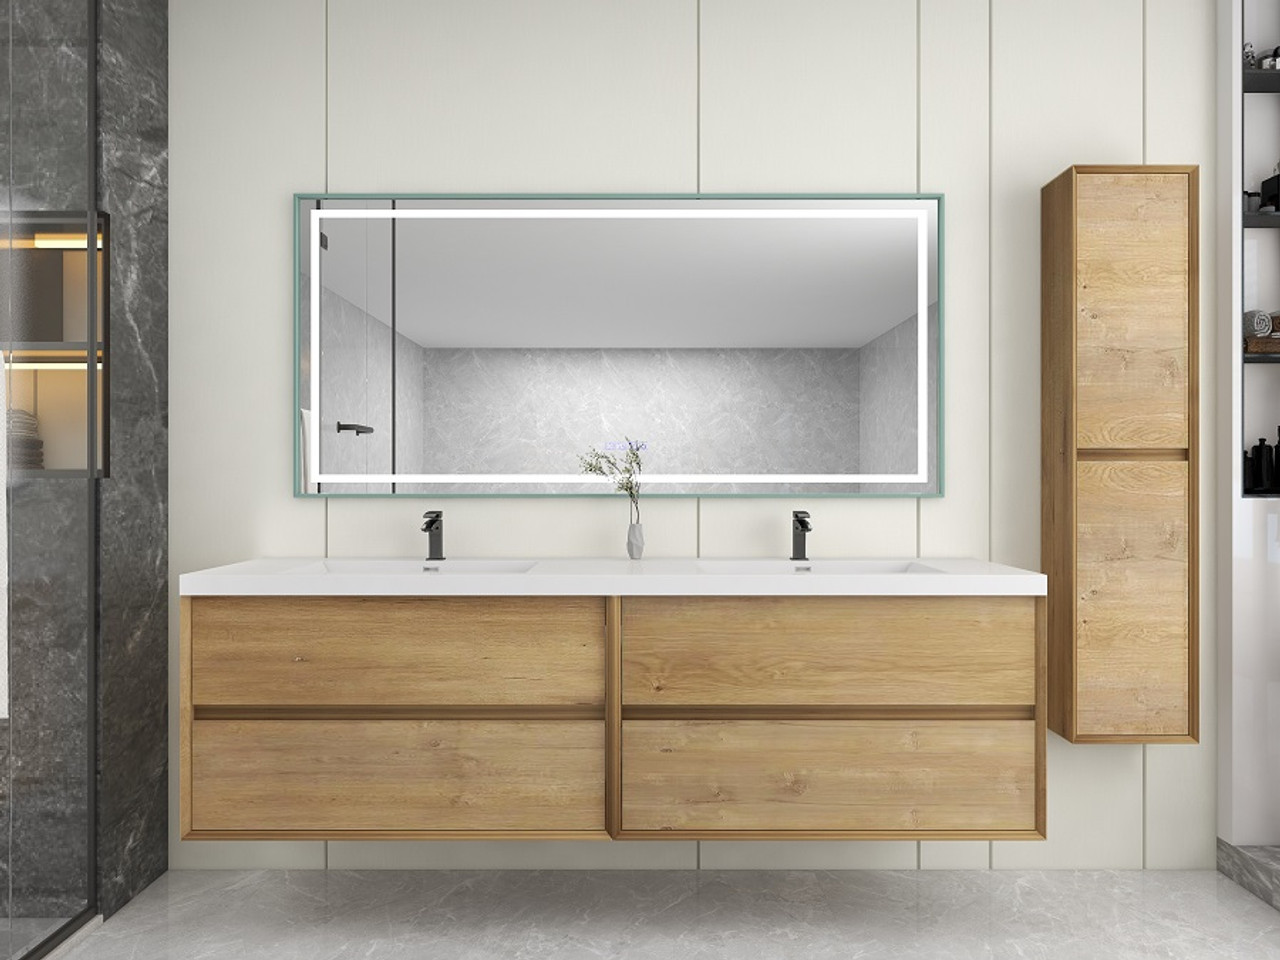 Kingdee Linen Cabinet or Linen Tower for Bathroom or Bedroom | Moreno Bath Bathroom Vanities